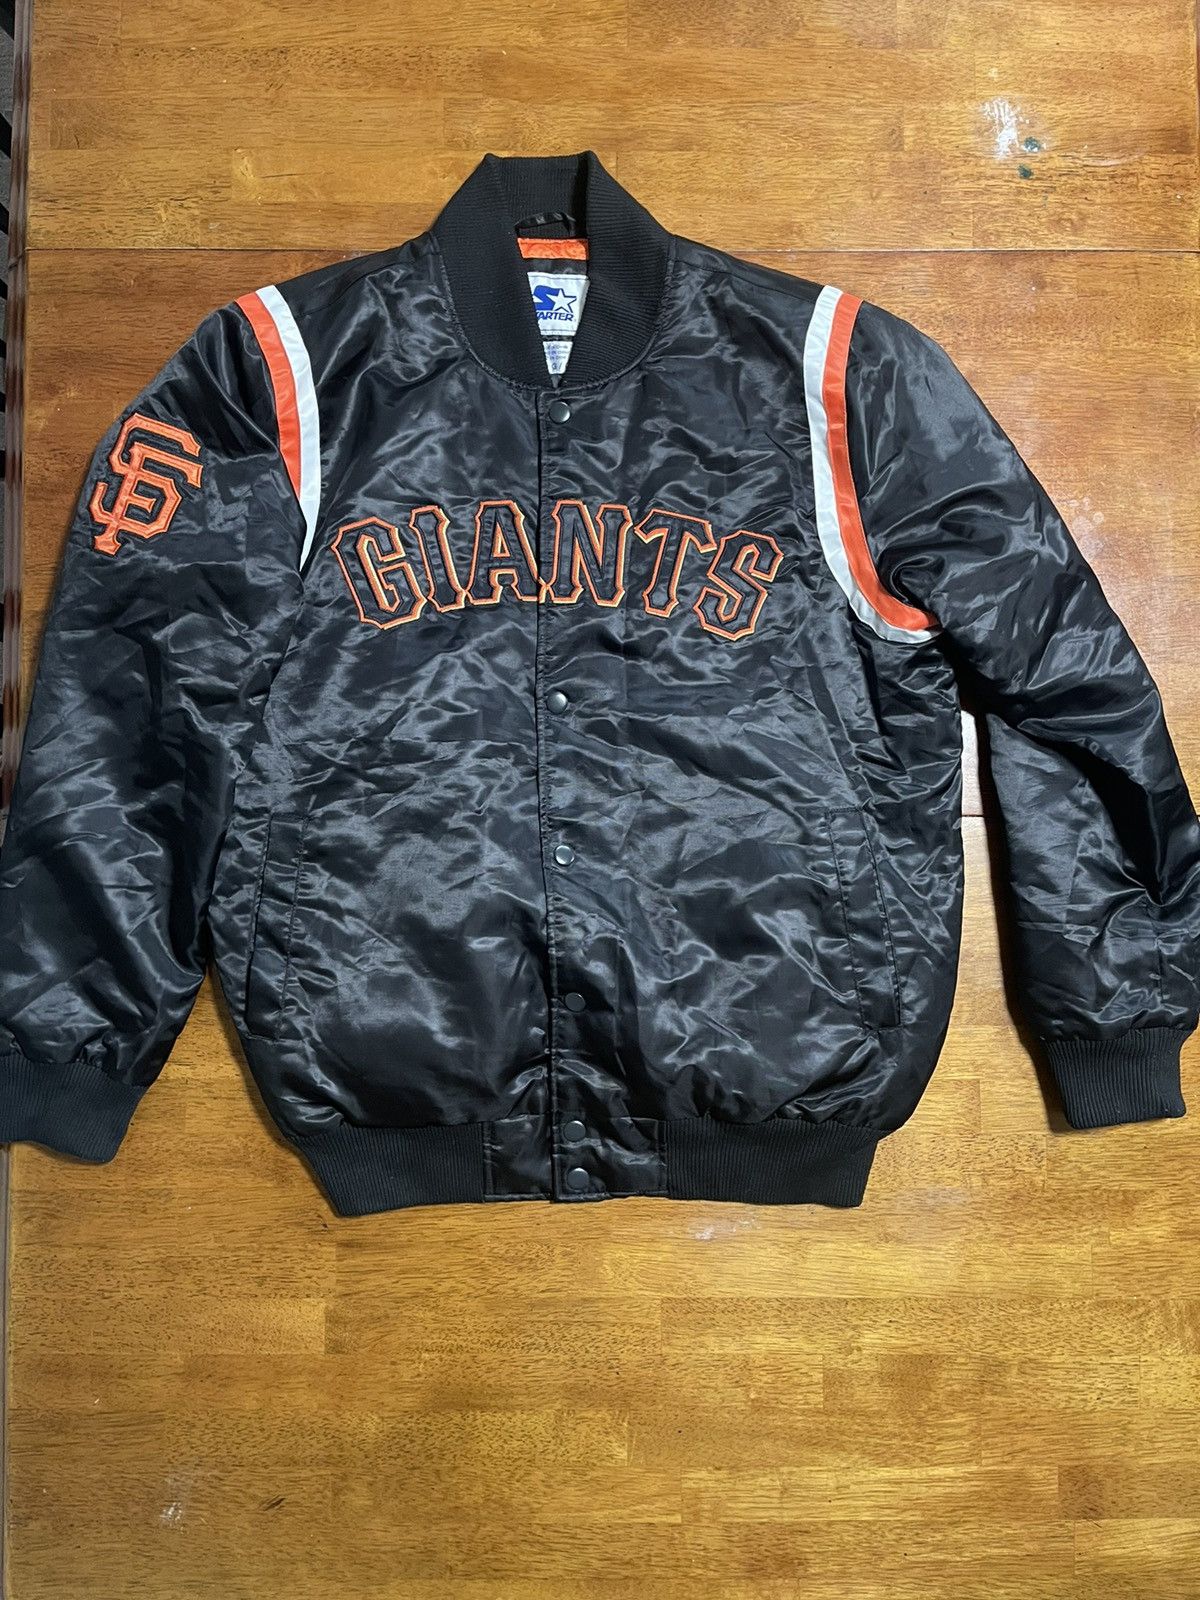 スポーツGiants vintage MLB jacket (L)